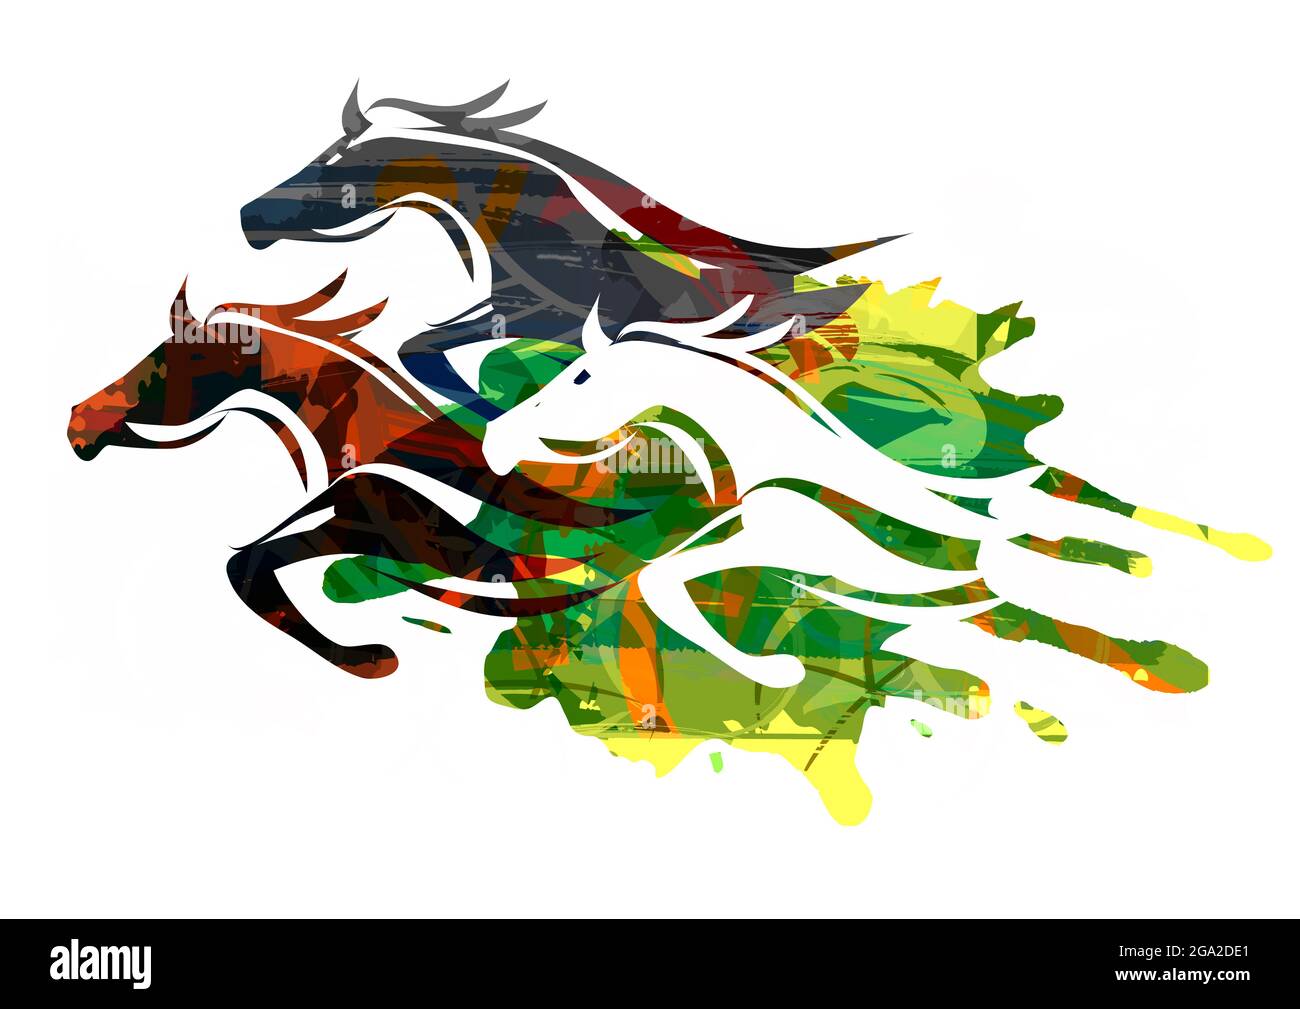 Drei Laufpferde. Ausdrucksstarke, farbenfrohe Illustration von drei Pferdesilhouetten. Stockfoto